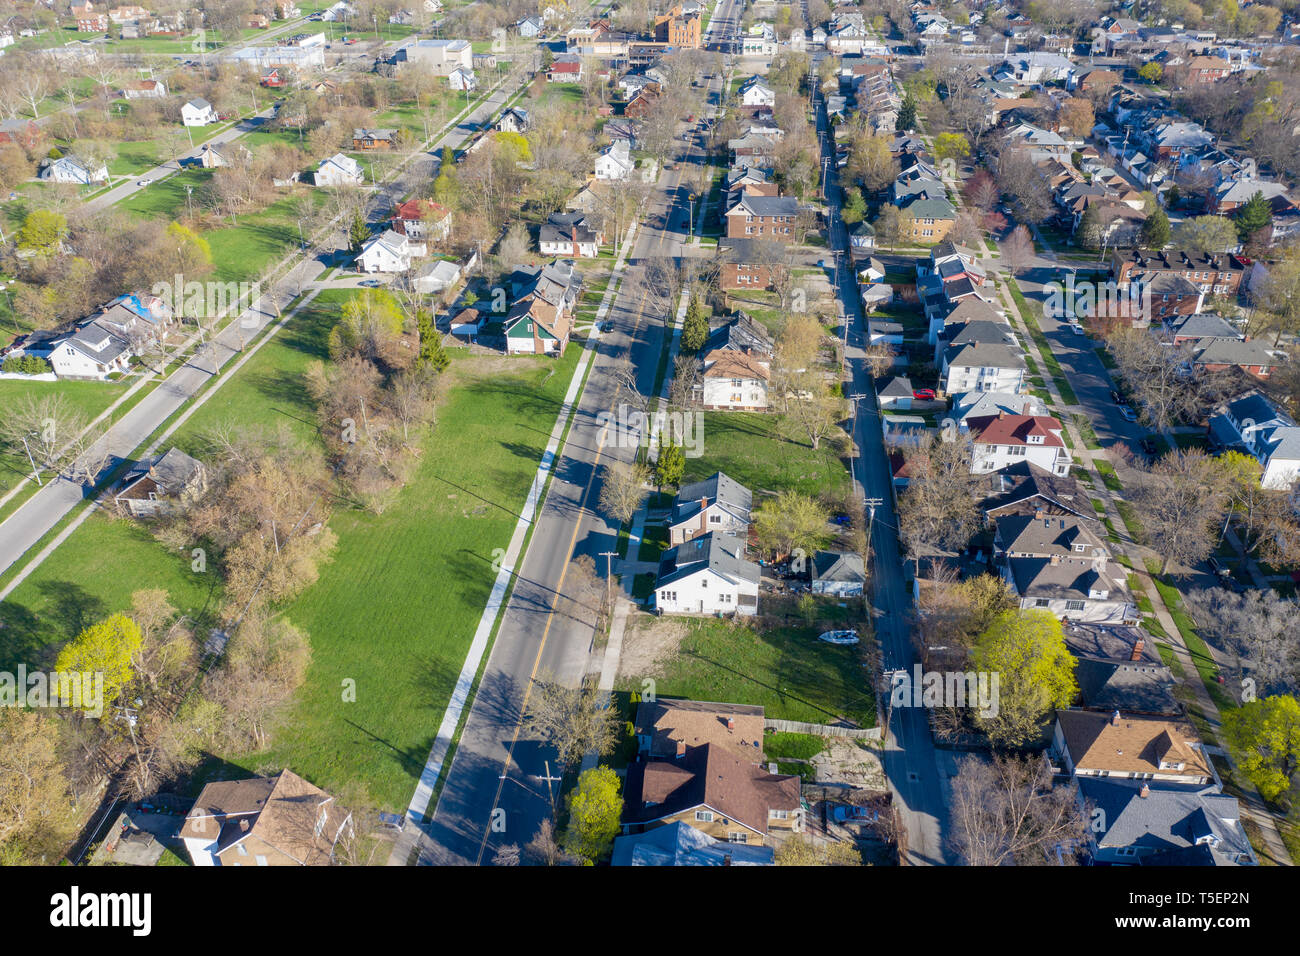 Detroit, Michigan - Enormes sectores de terrenos baldíos en Detroit (izquierda) no se ven en el acaudalado suburbio de Grosse Pointe Park. (La línea divisoria funciona d Foto de stock